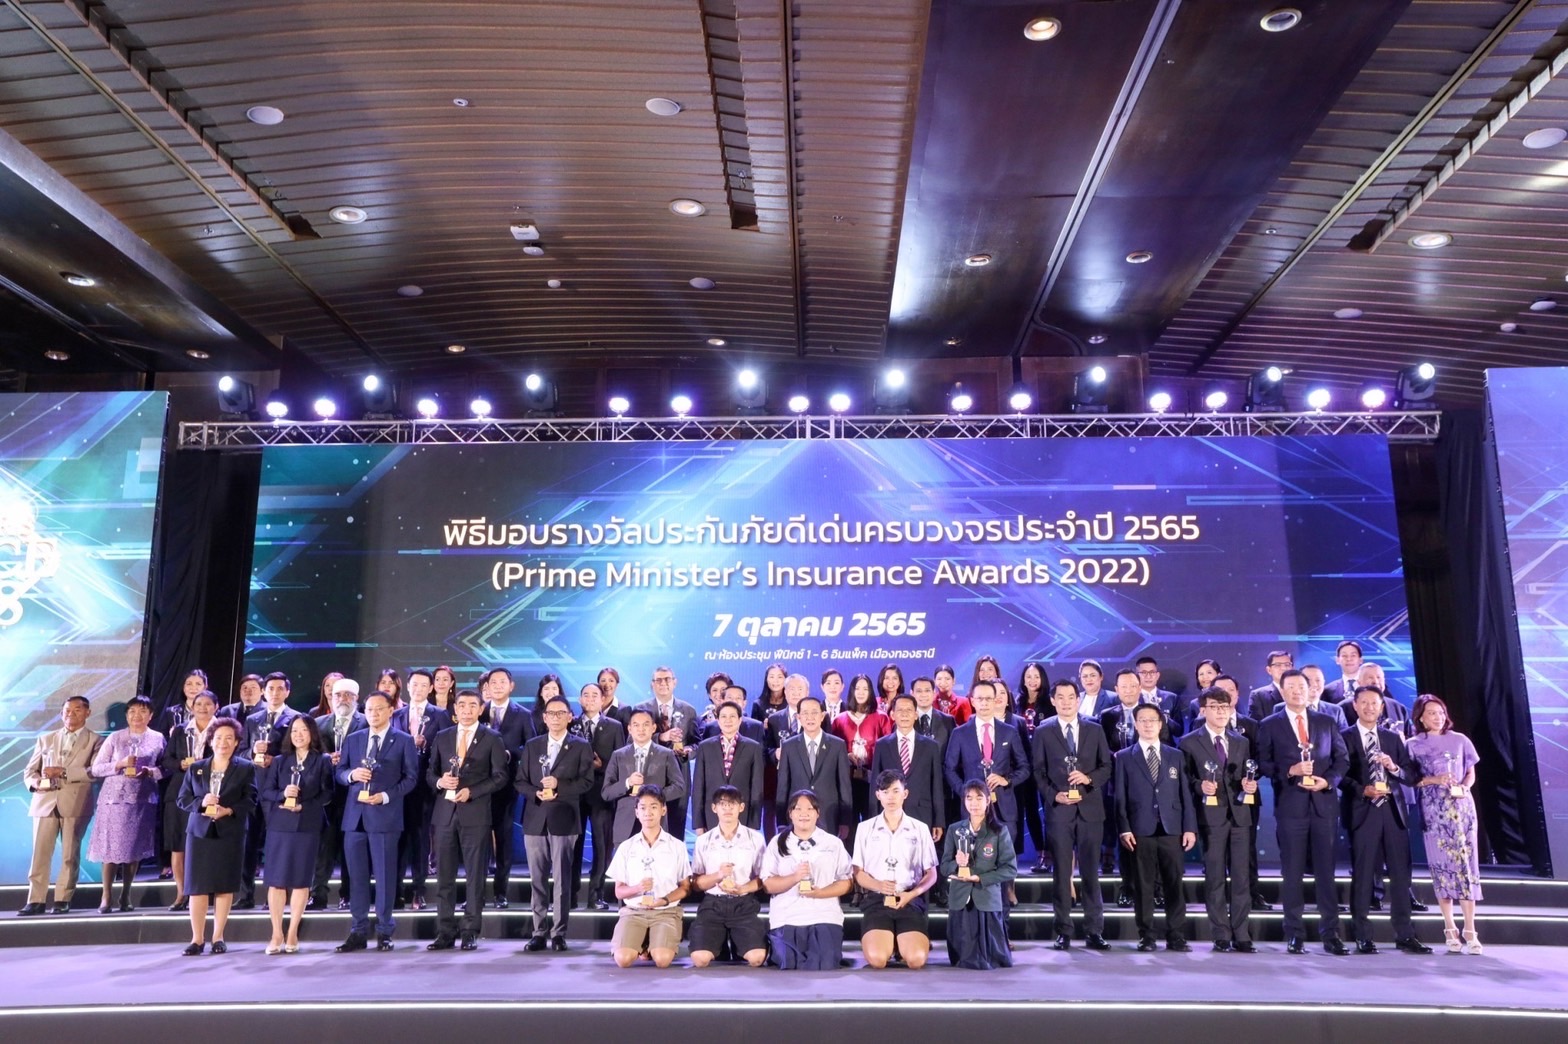 รัฐมนตรีว่าการกระทรวงการคลังเป็นประธานมอบรางวัล “สุดยอดประกันภัยดีเด่นครบวงจร ประจำปี 2565”  และกดปุ่มเปิดงาน Thailand InsurTech Fair ครั้งที่ 2 อย่างยิ่งใหญ่ โดยเชิญยืนไว้อาลัยเหตุกราดยิงที่หนองบัวลำภู ก่อนเปิดงาน